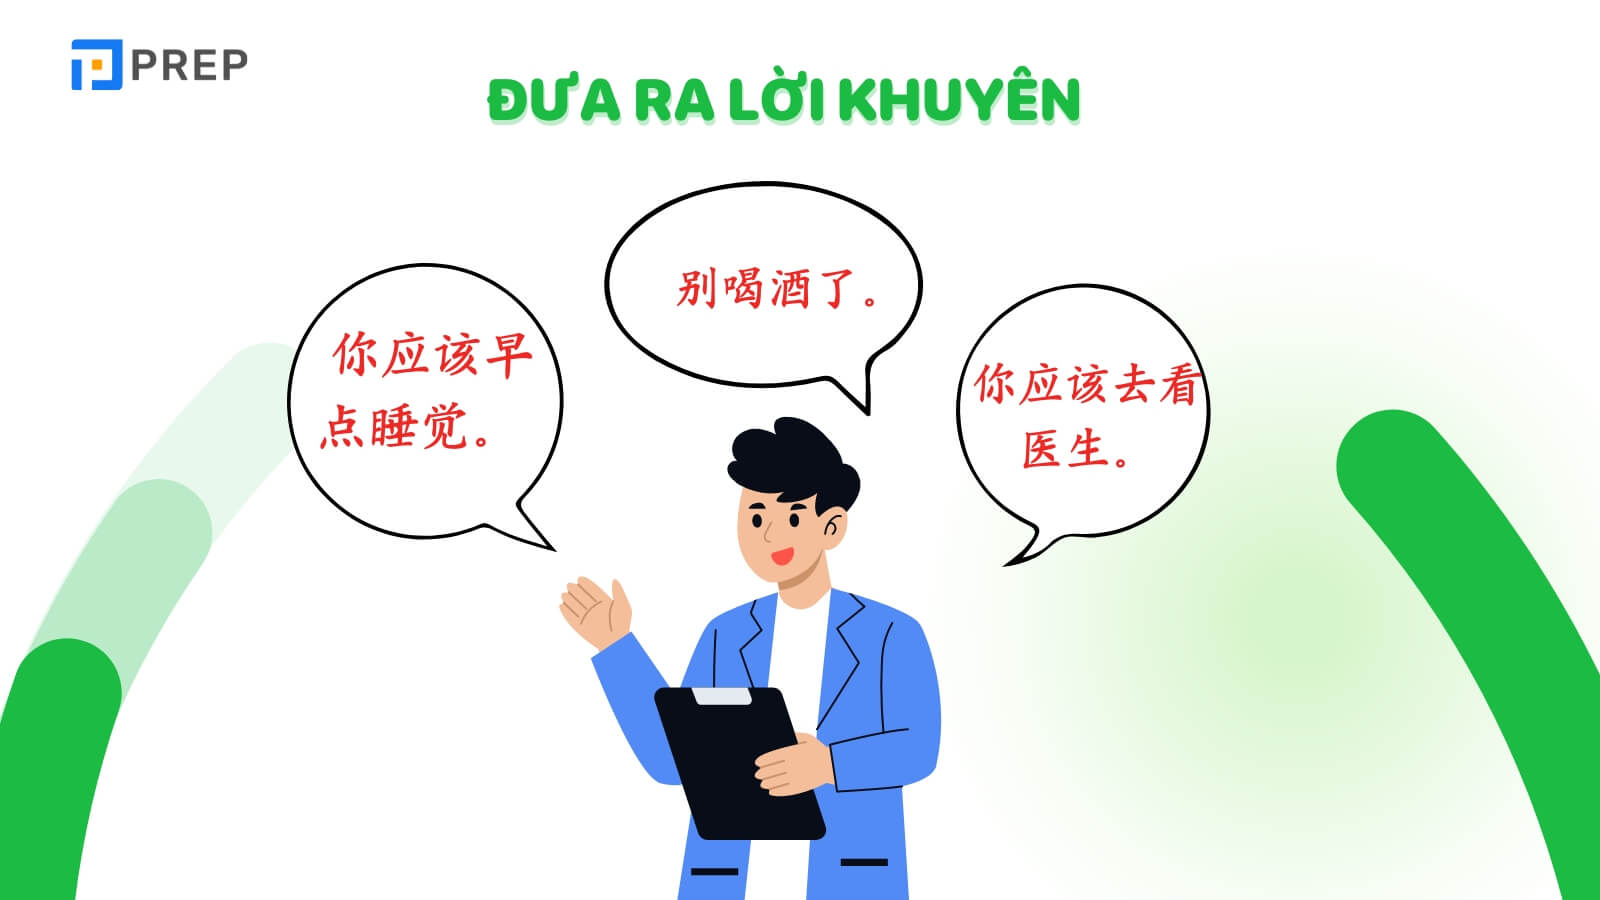 Những câu giao tiếp tiếng Trung cơ bản khi đưa ra lời khuyên